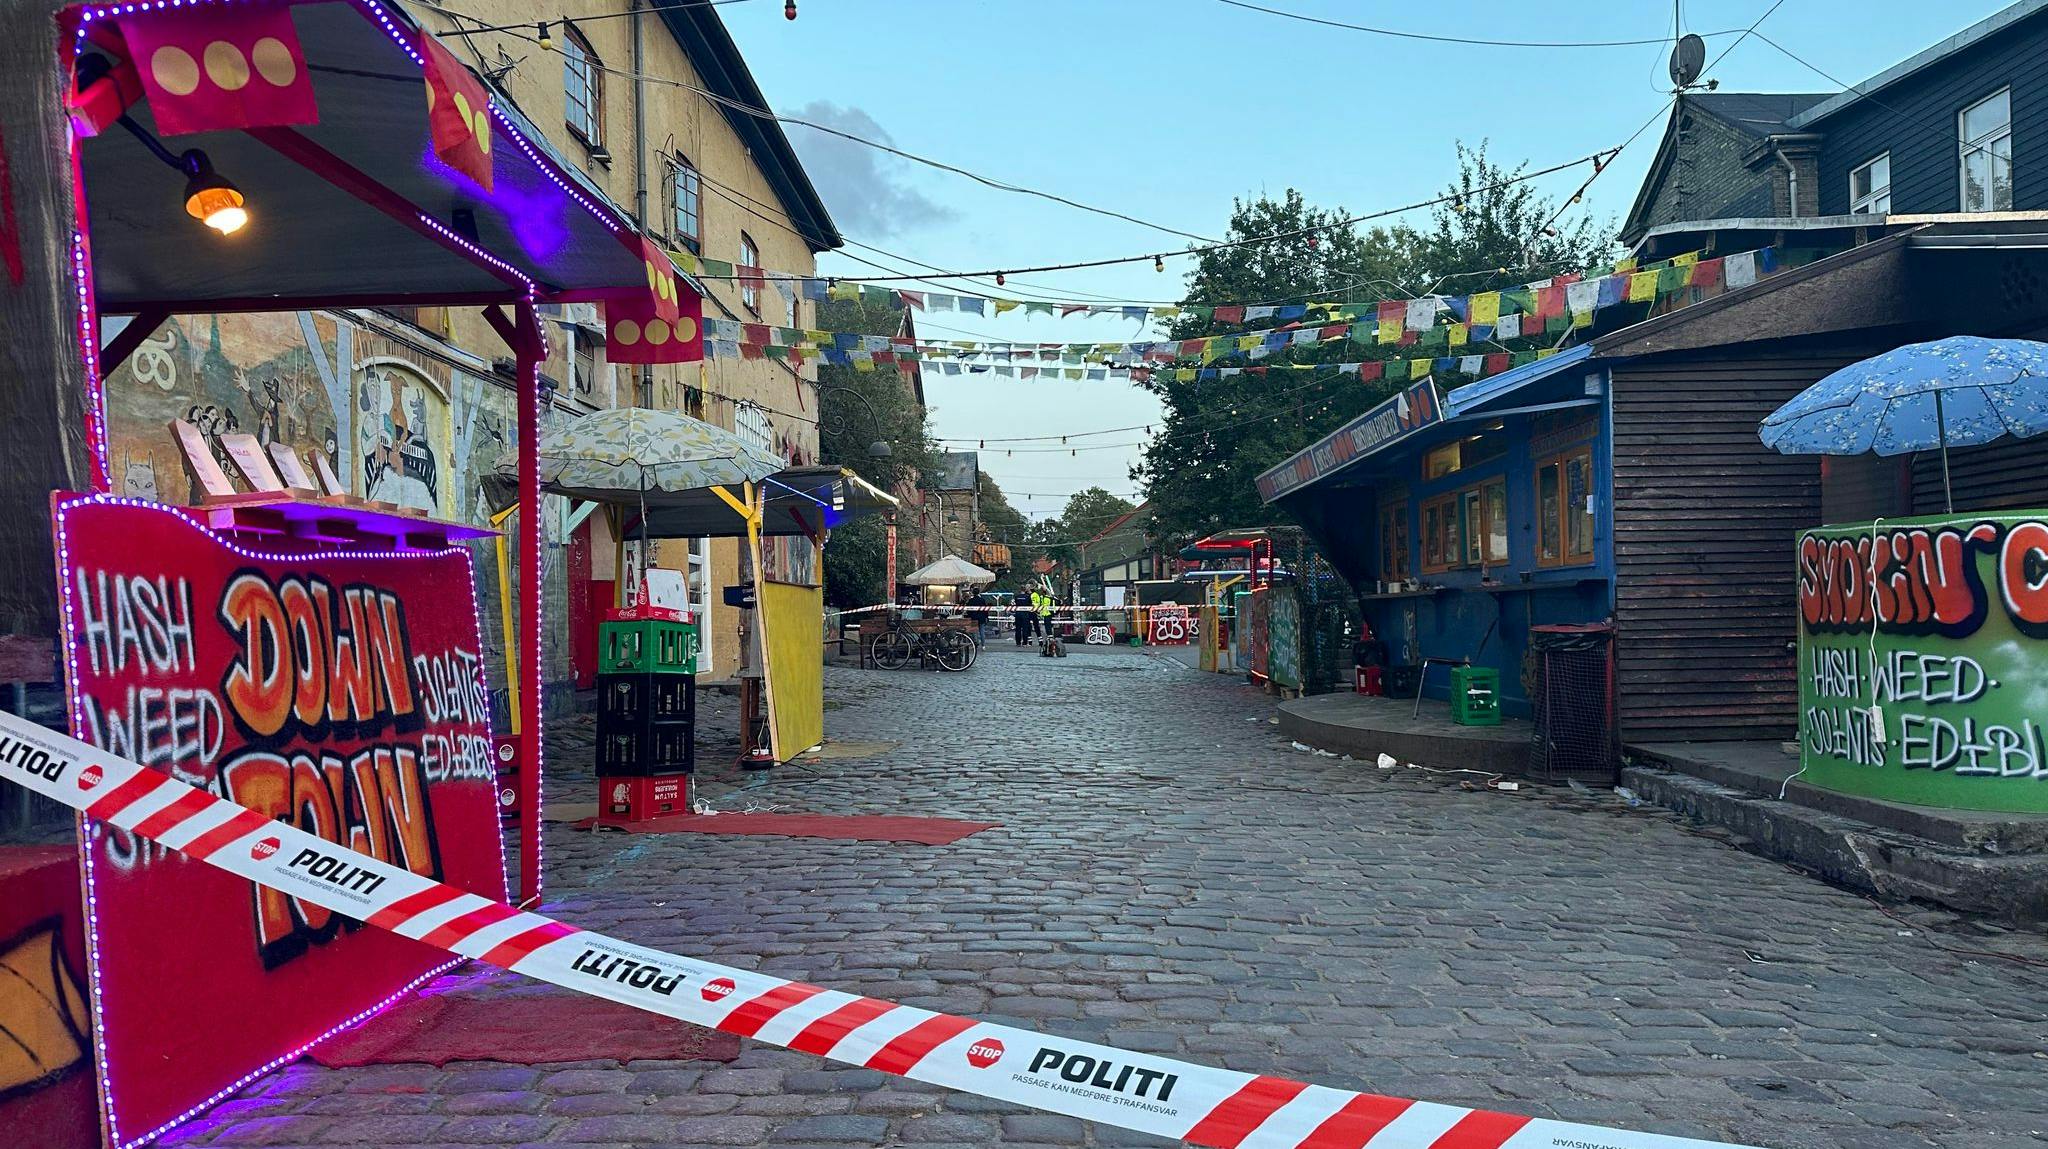 Efter det voldsomme skuddrab på Christiania i forrige weekend har politiet oprettet flere visitationszoner - blandt andet på Christianshavn og på Nørrebro.